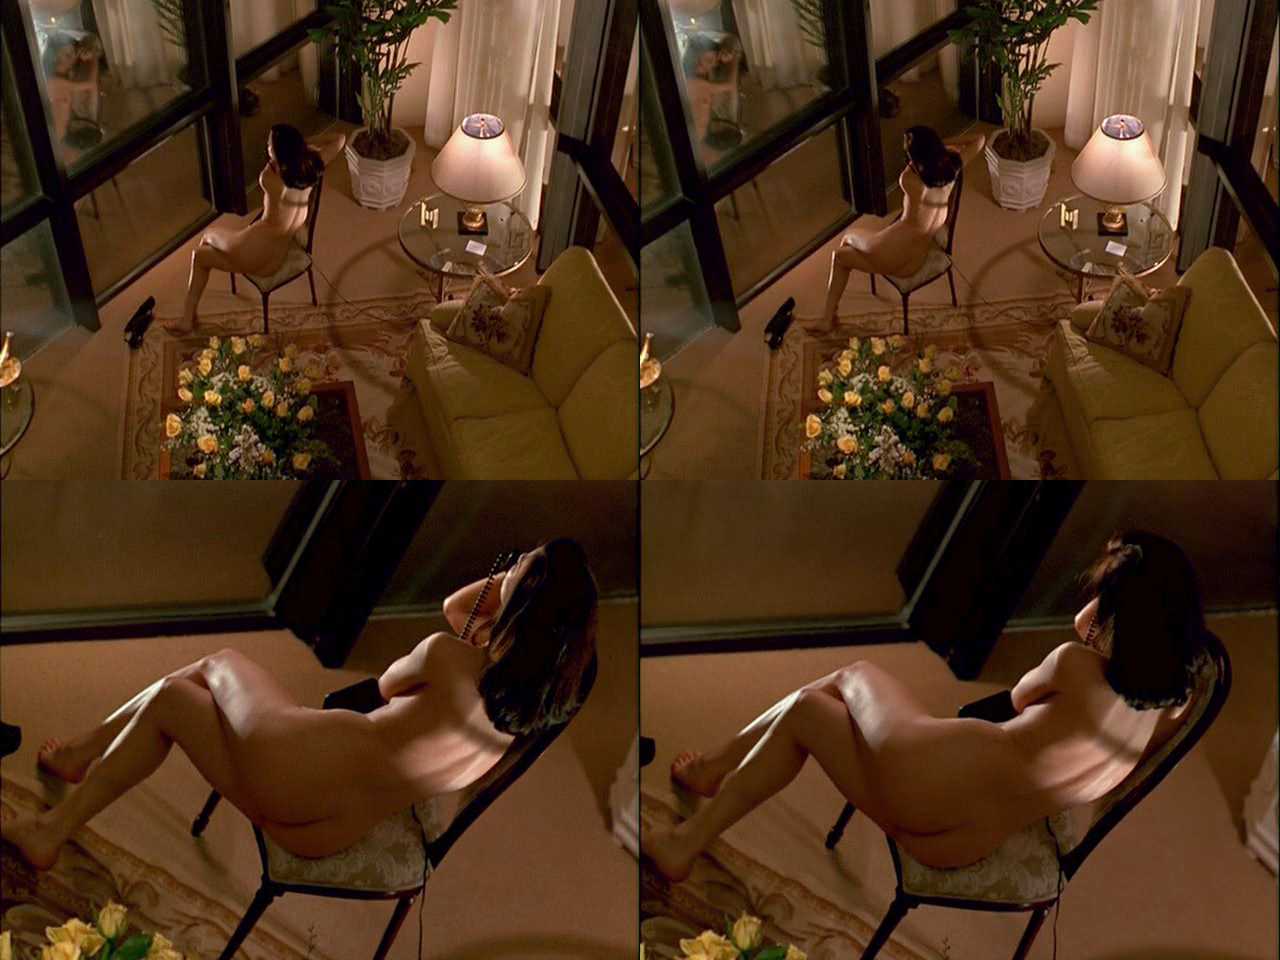 Linda florentino naked